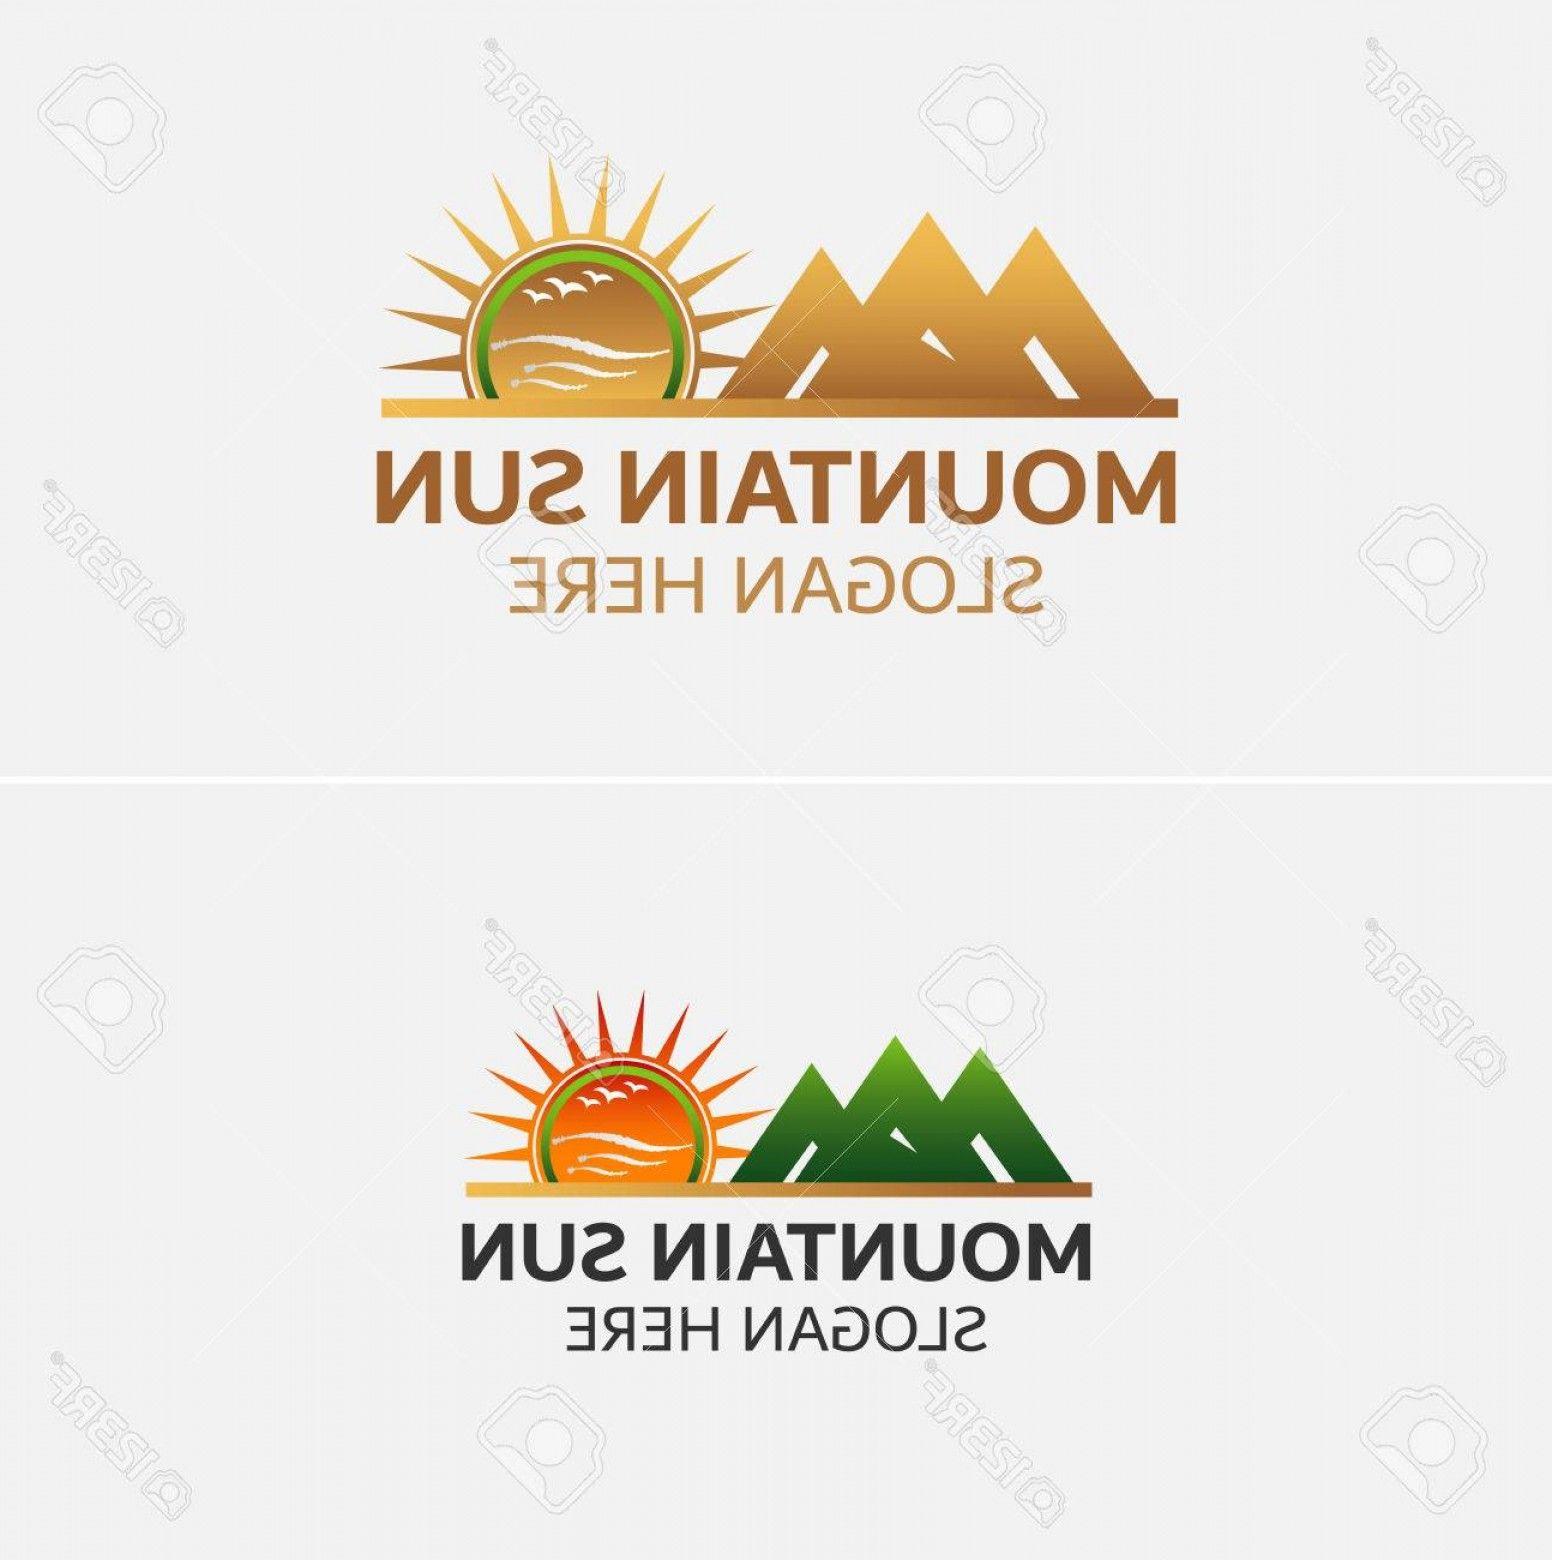 Golden Mountain Logo - Photostock Vector Golden Mountains Logo Vector With Sun Icons ...